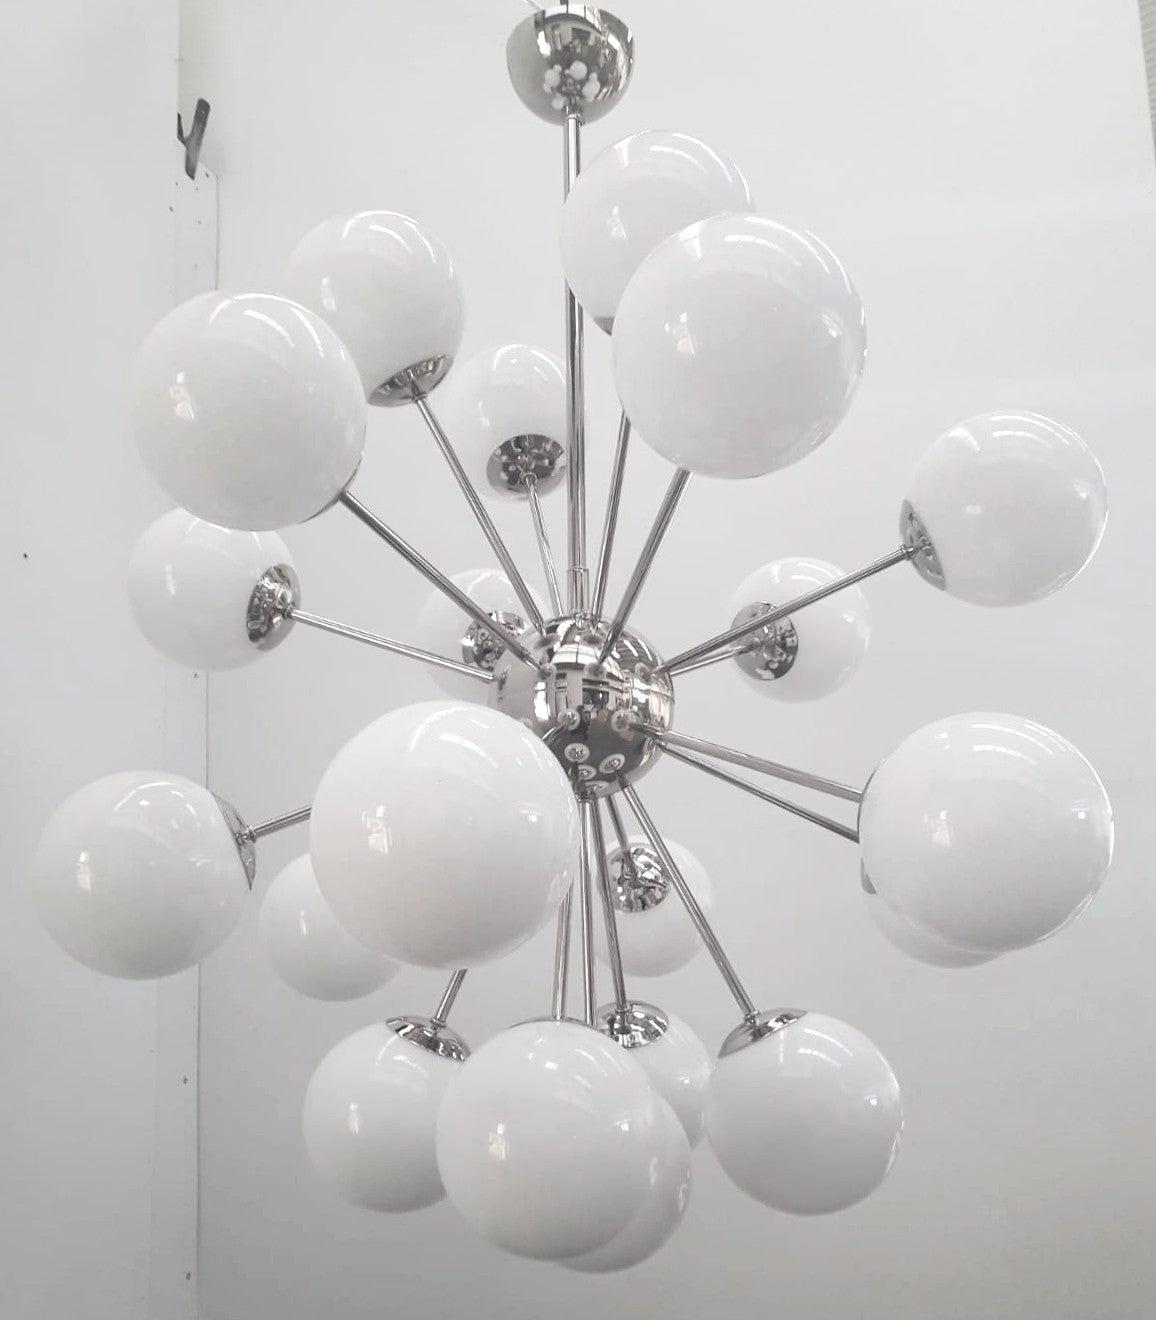 Lustre italien en forme de sputnik avec 21 globes en verre de Murano montés sur une structure métallique en finition nickel poli / Conçu par Fabio Bergomi pour Fabio Ltd / Fabriqué en Italie.
21 lampes / type E12 ou E14 / max 40W chacune
Diamètre :